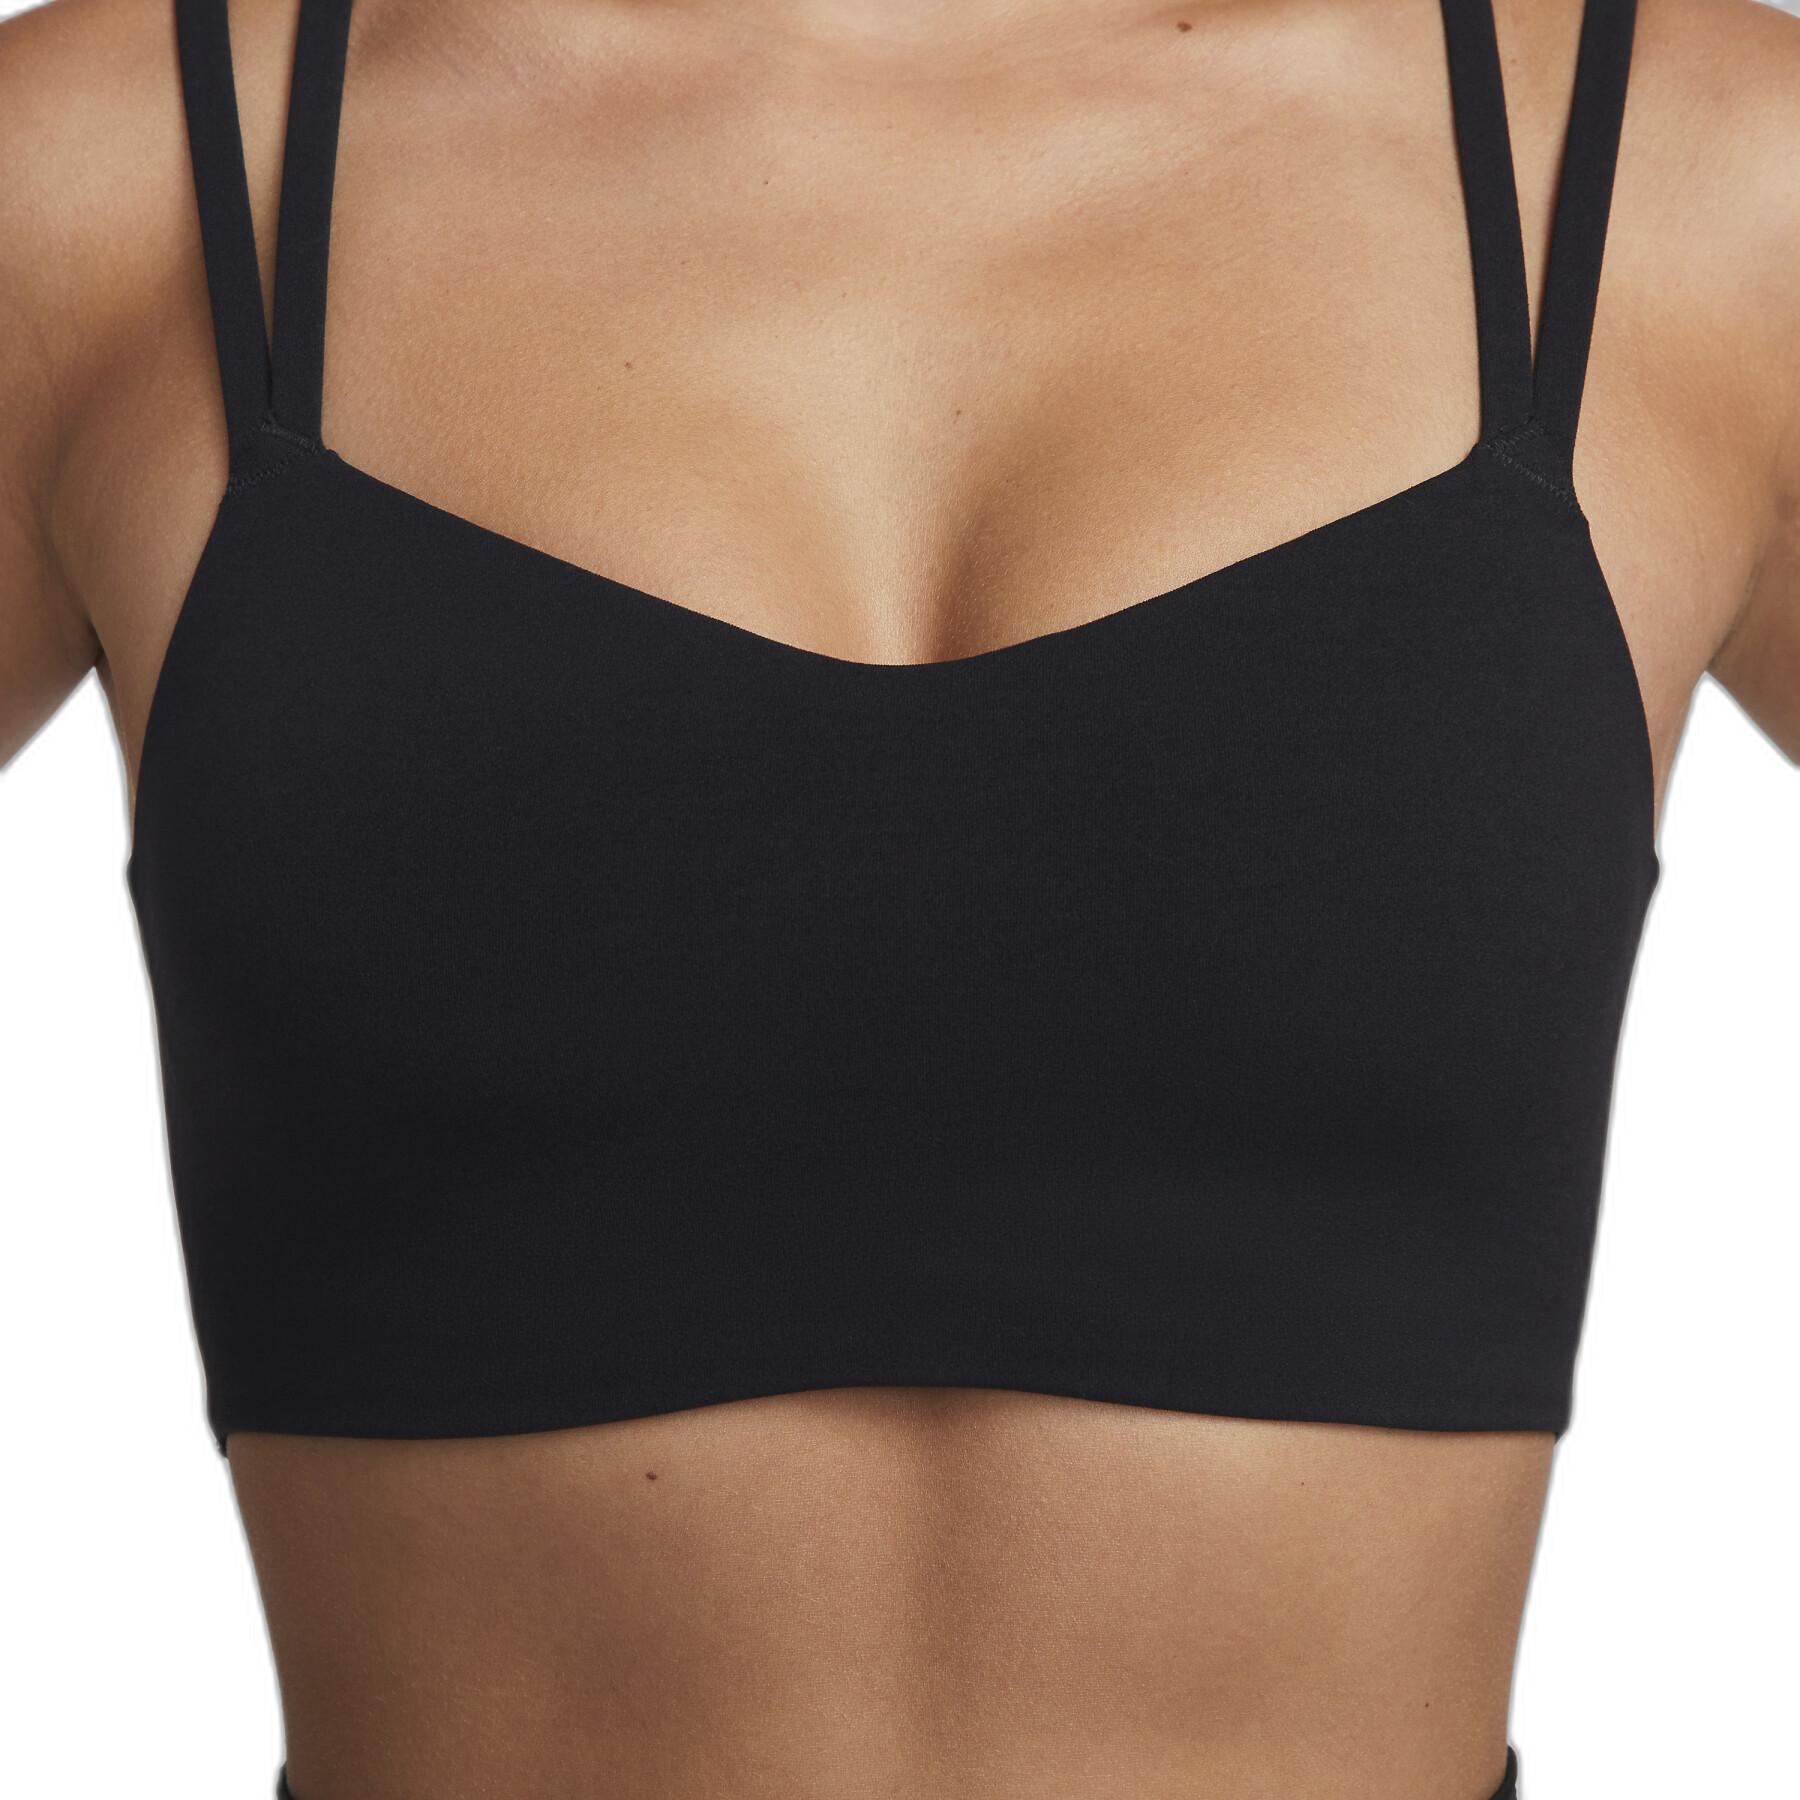 Women's bra Nike Alate Trace